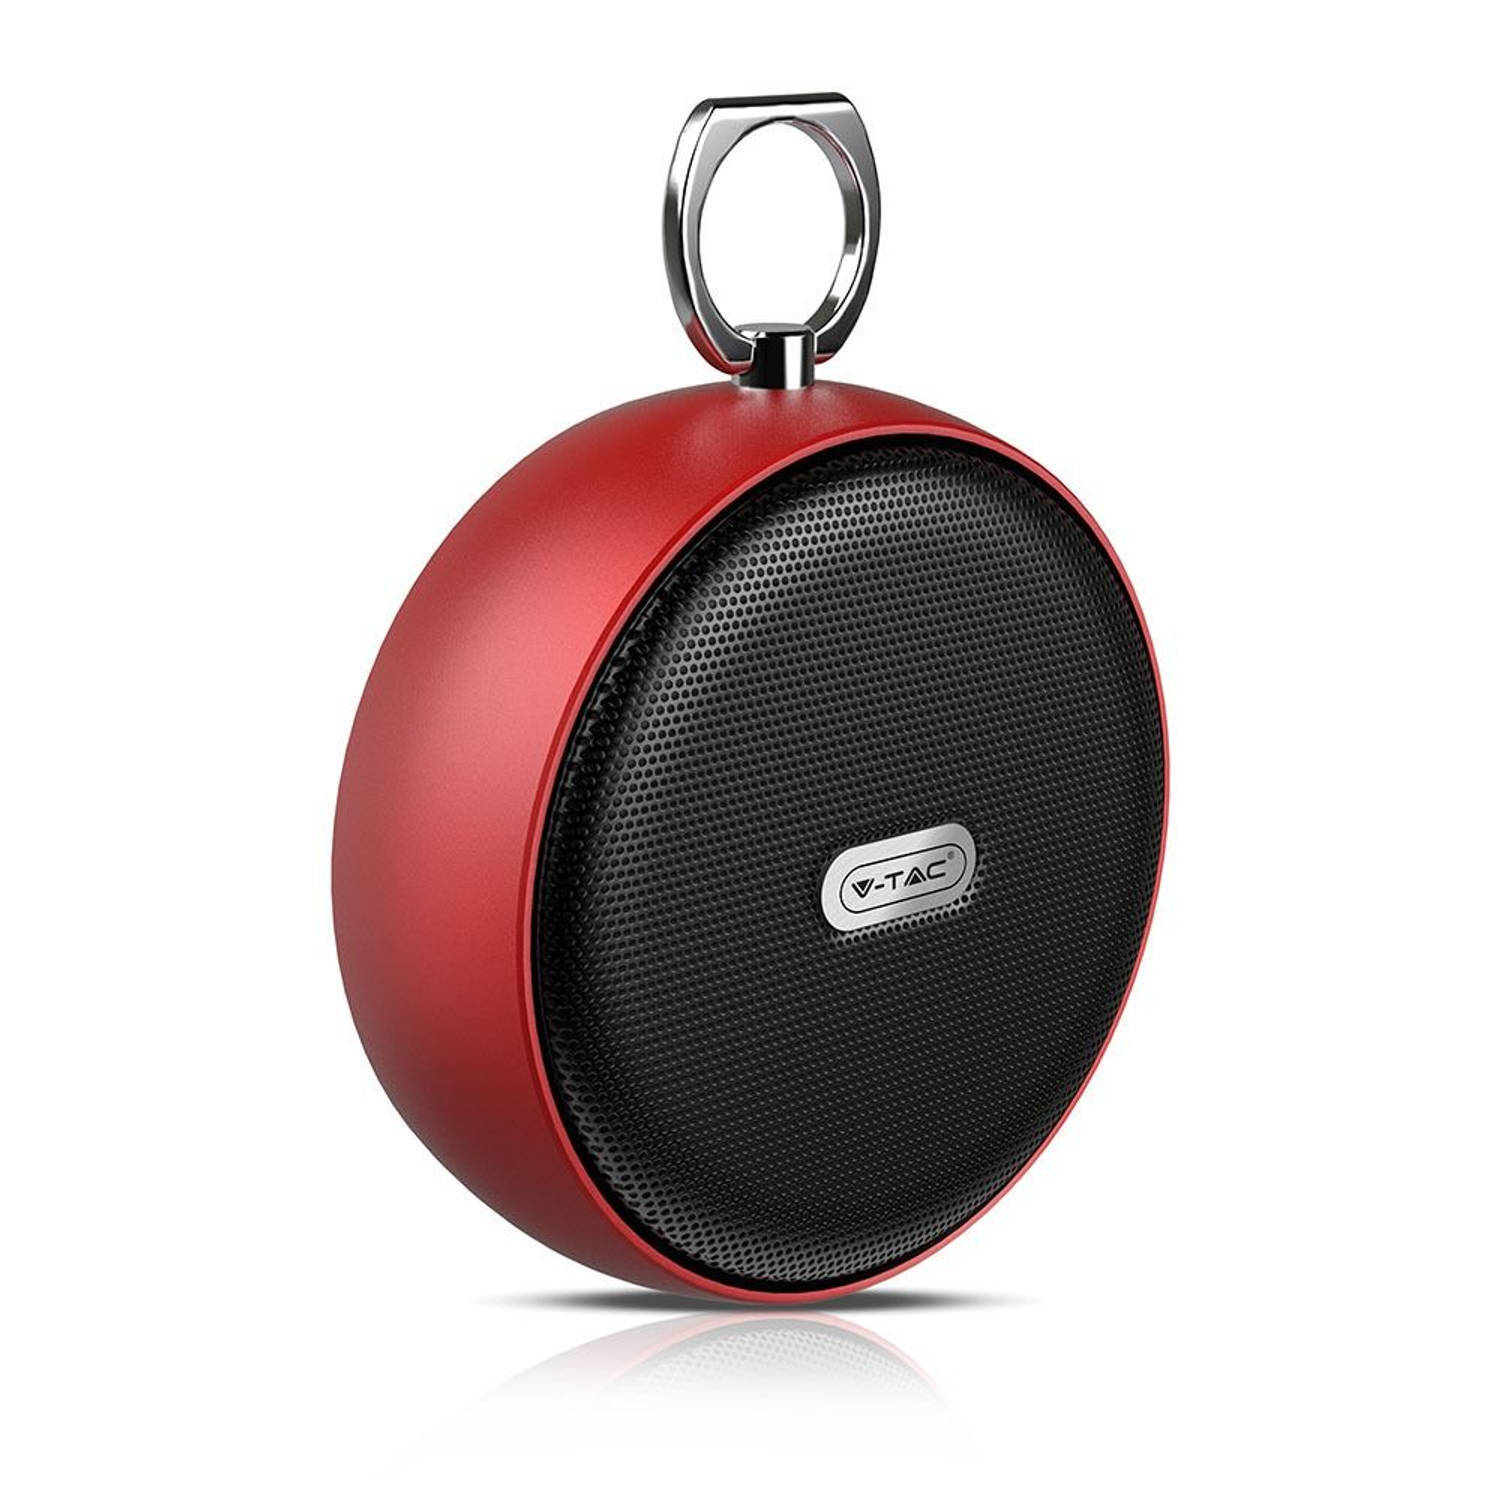 V-tac vt-6211 portable bluetooth speaker - compact - rood